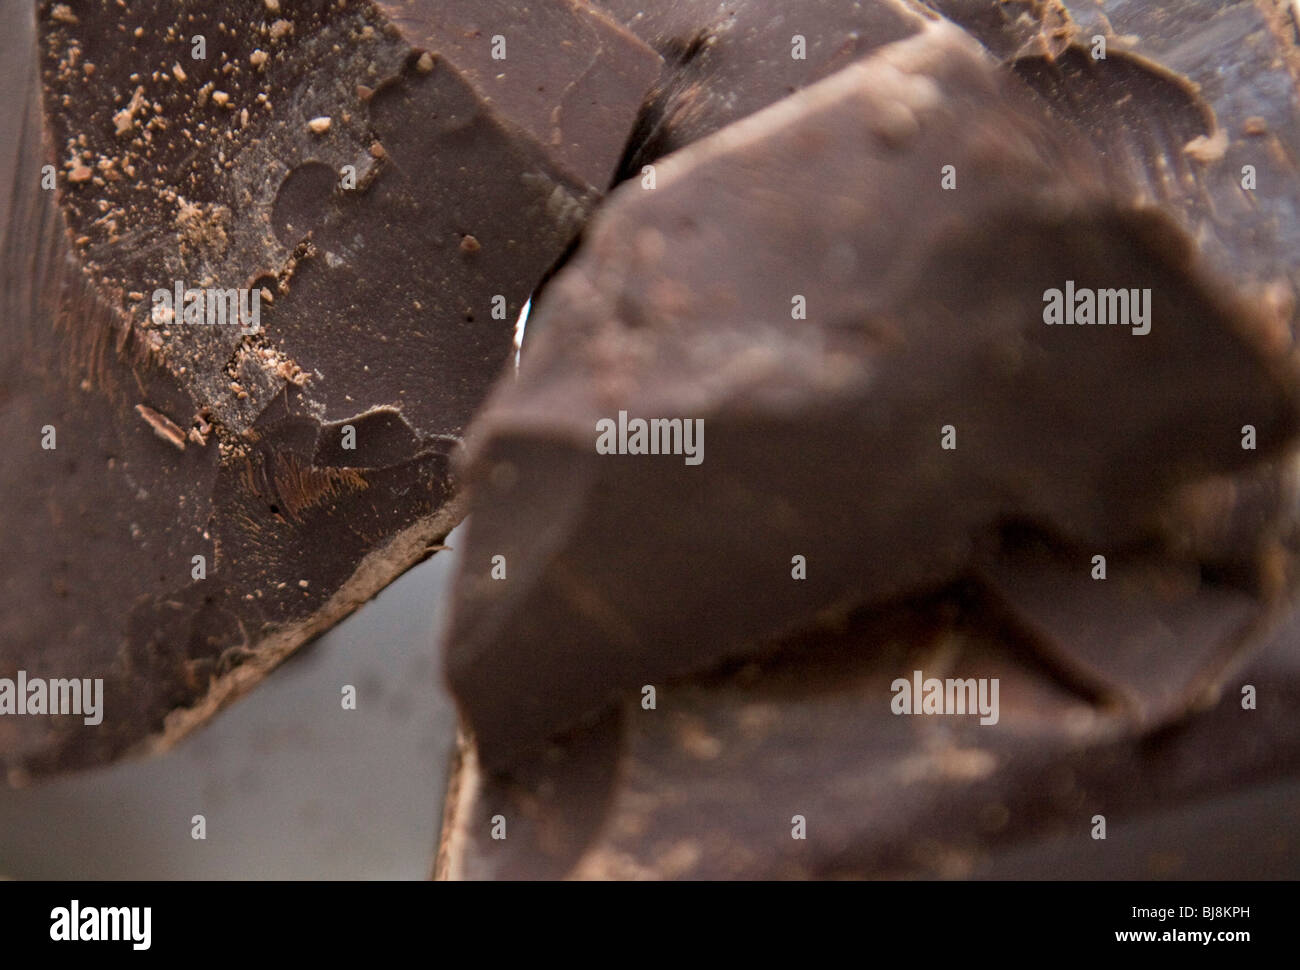 Un blocco di cioccolato fondente. Foto Stock